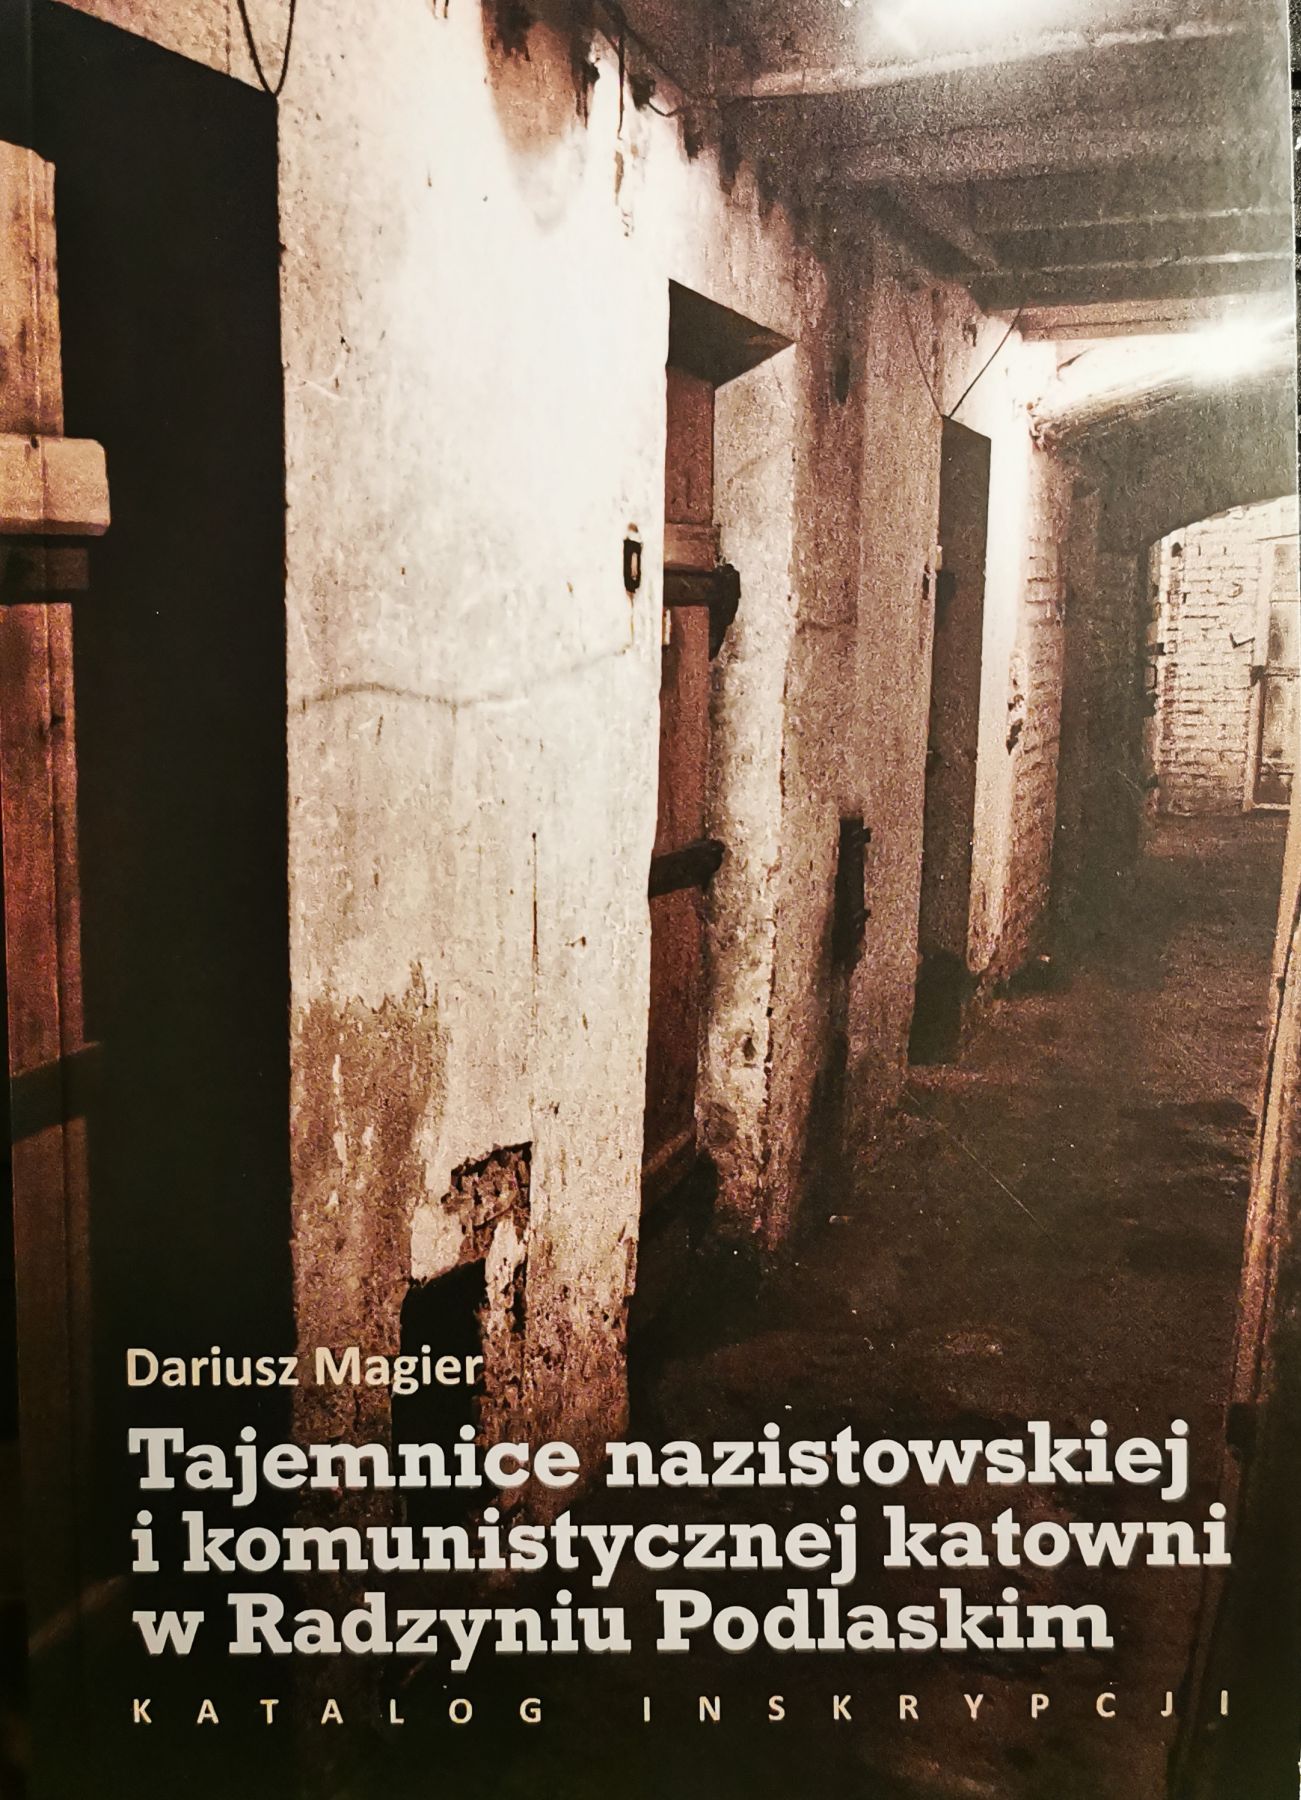 W piątek, 19 lutego promocja online książki Dariusza Magiera o katowni Gestapo/UB - Zdjęcie główne